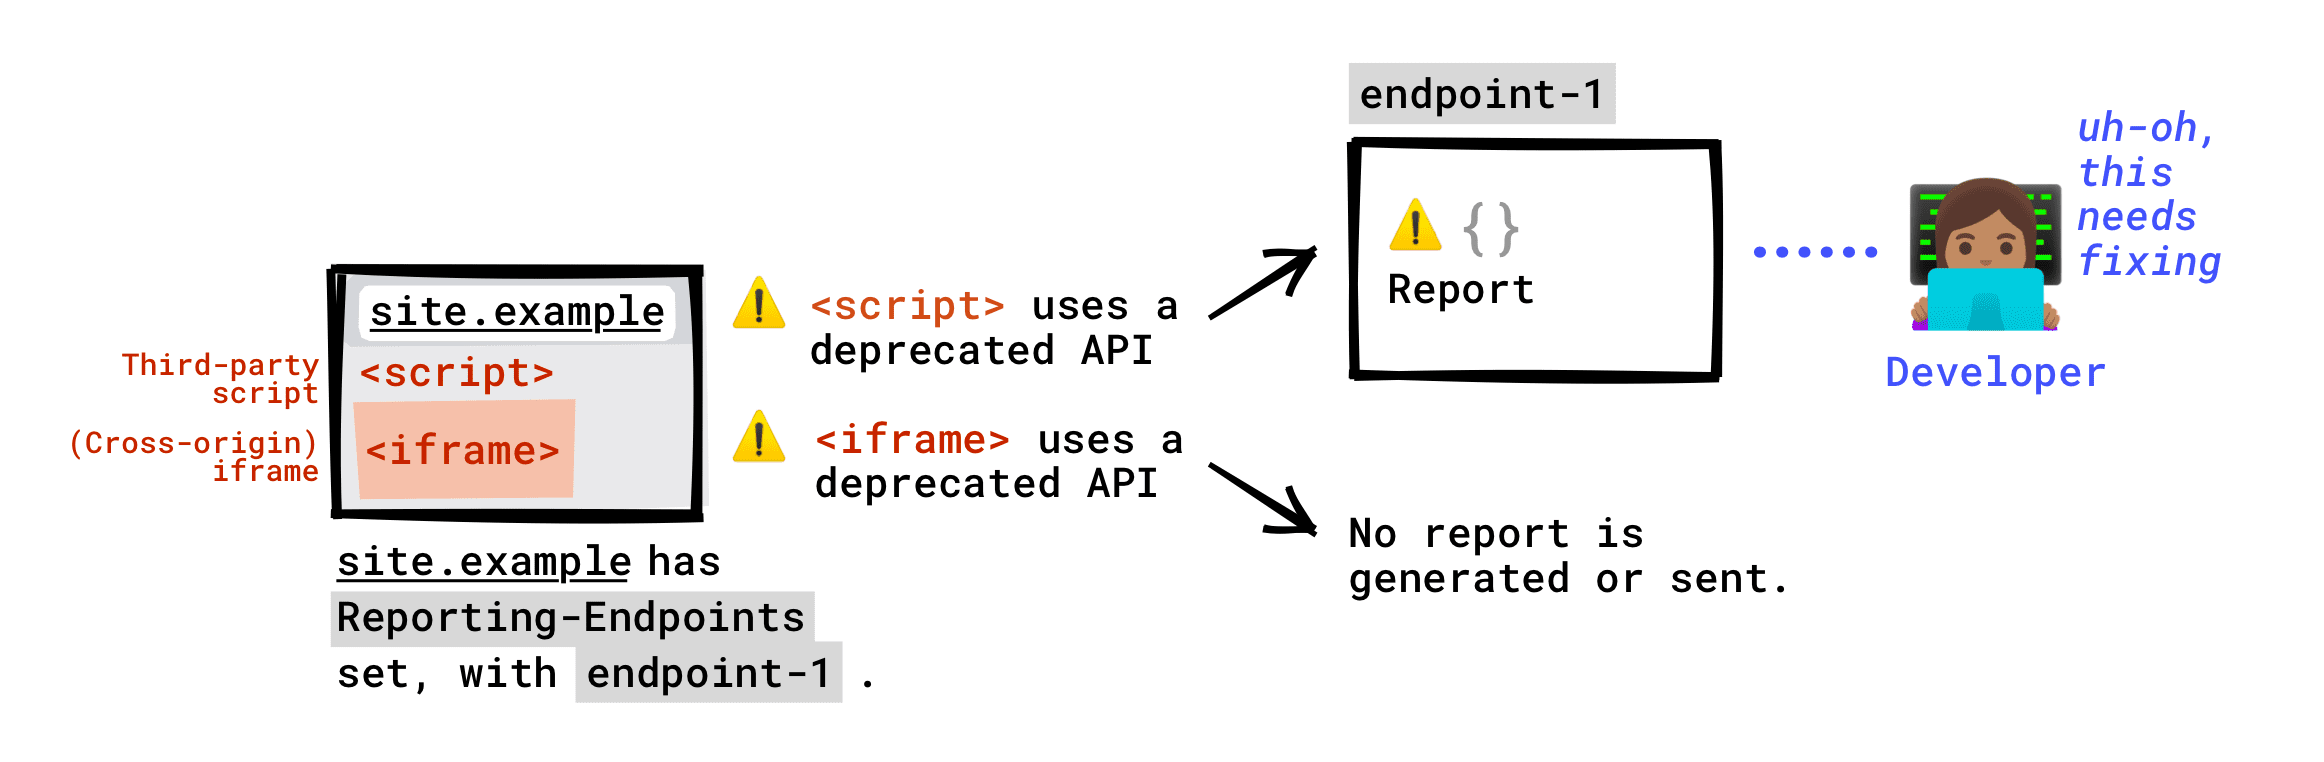 Si el encabezado de Reporting-Endpoints está configurado en tu página, se informará a tu extremo la API obsoleta a la que llamen las secuencias de comandos de terceros que se ejecutan en tu página. No se informará a tu extremo una API obsoleta a la que llame un iframe incorporado en tu página. Solo se generará un informe de baja si el servidor de iframe tiene configurado Reporting-Endpoints, y este informe se enviará a cualquier extremo que el servidor del iframe haya configurado.